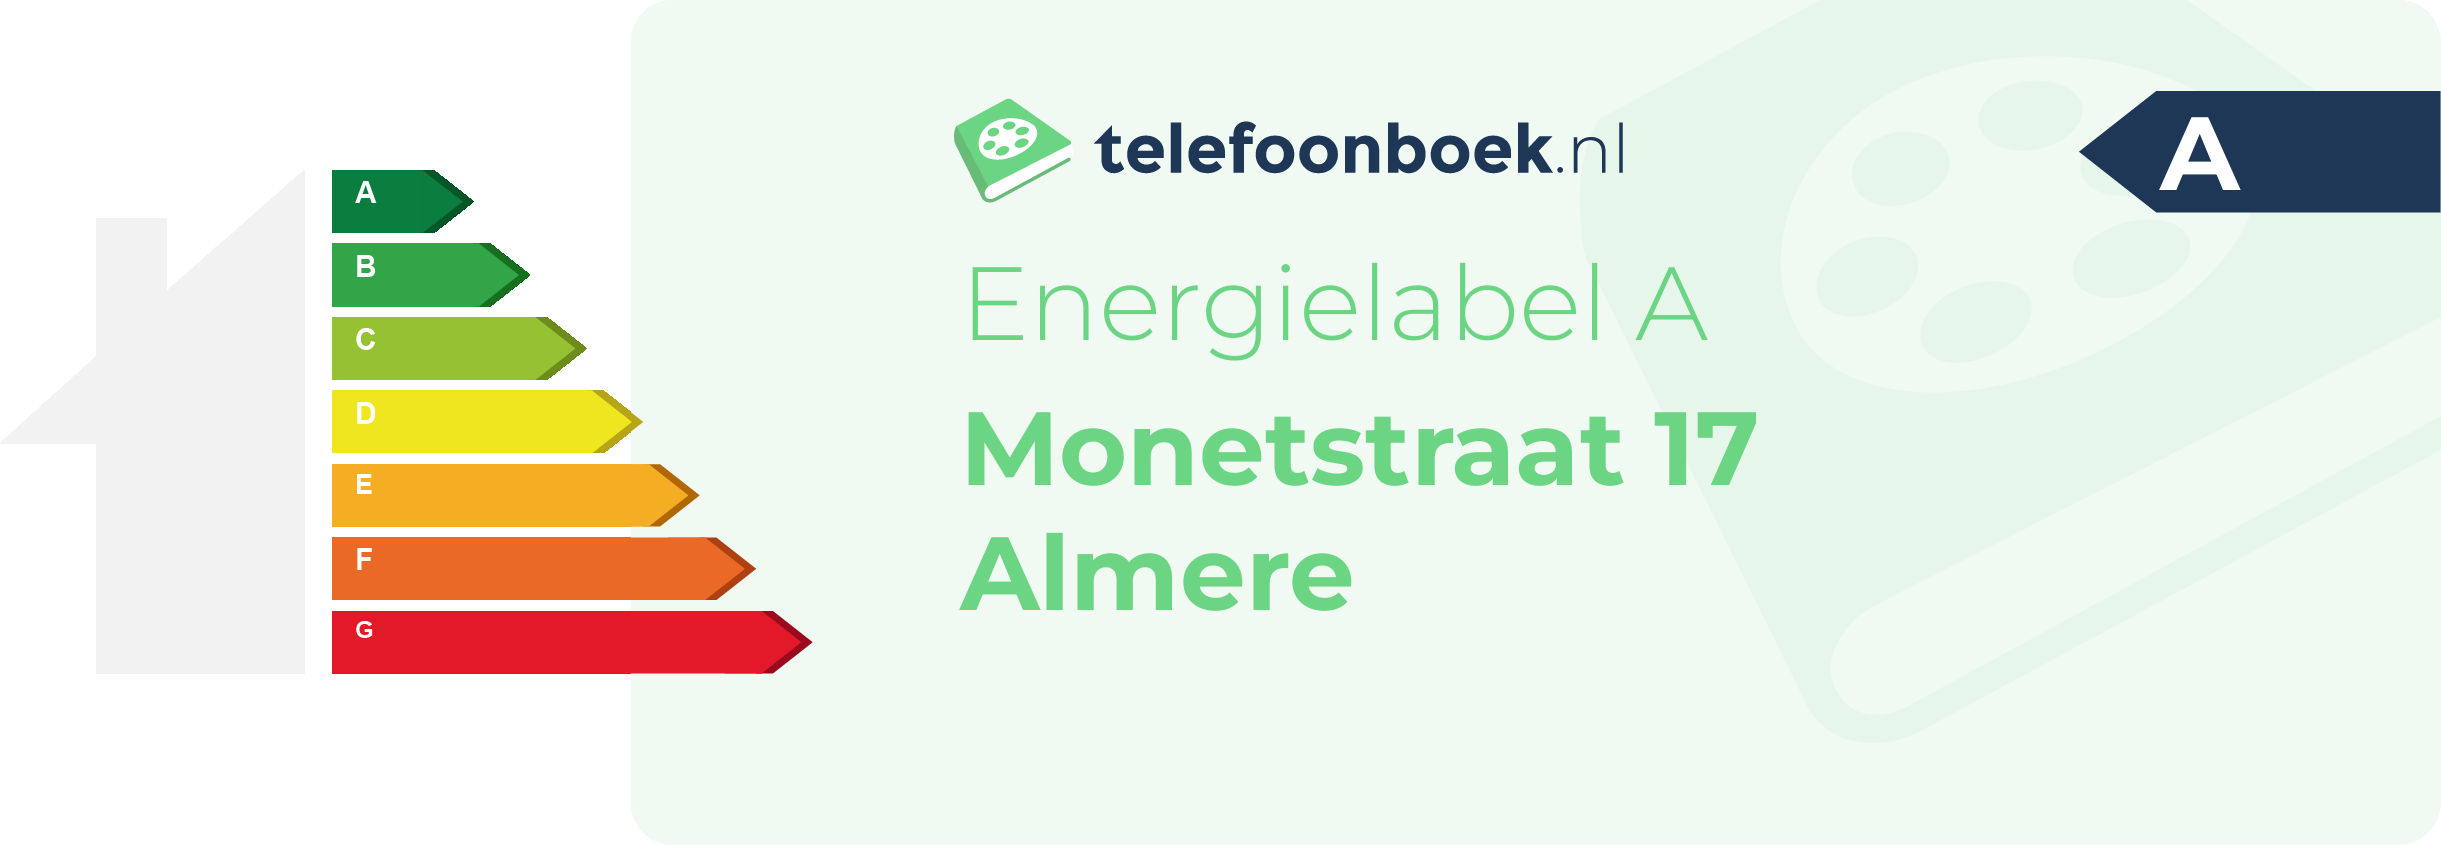 Energielabel Monetstraat 17 Almere